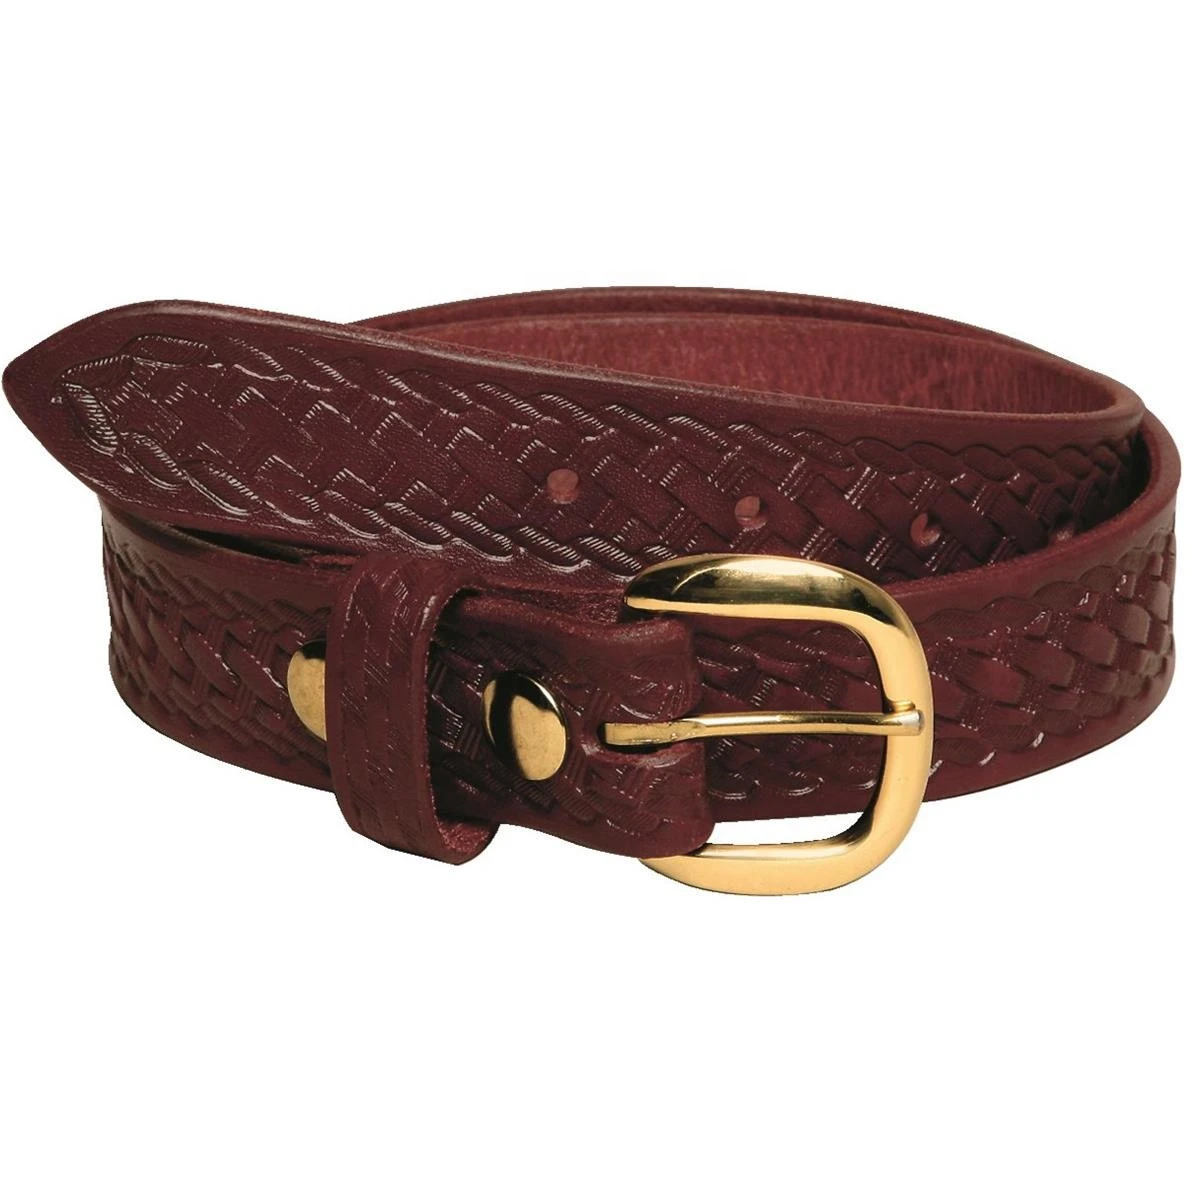 High quality fashion man belt genuine leather belts men casual jeans belt for men